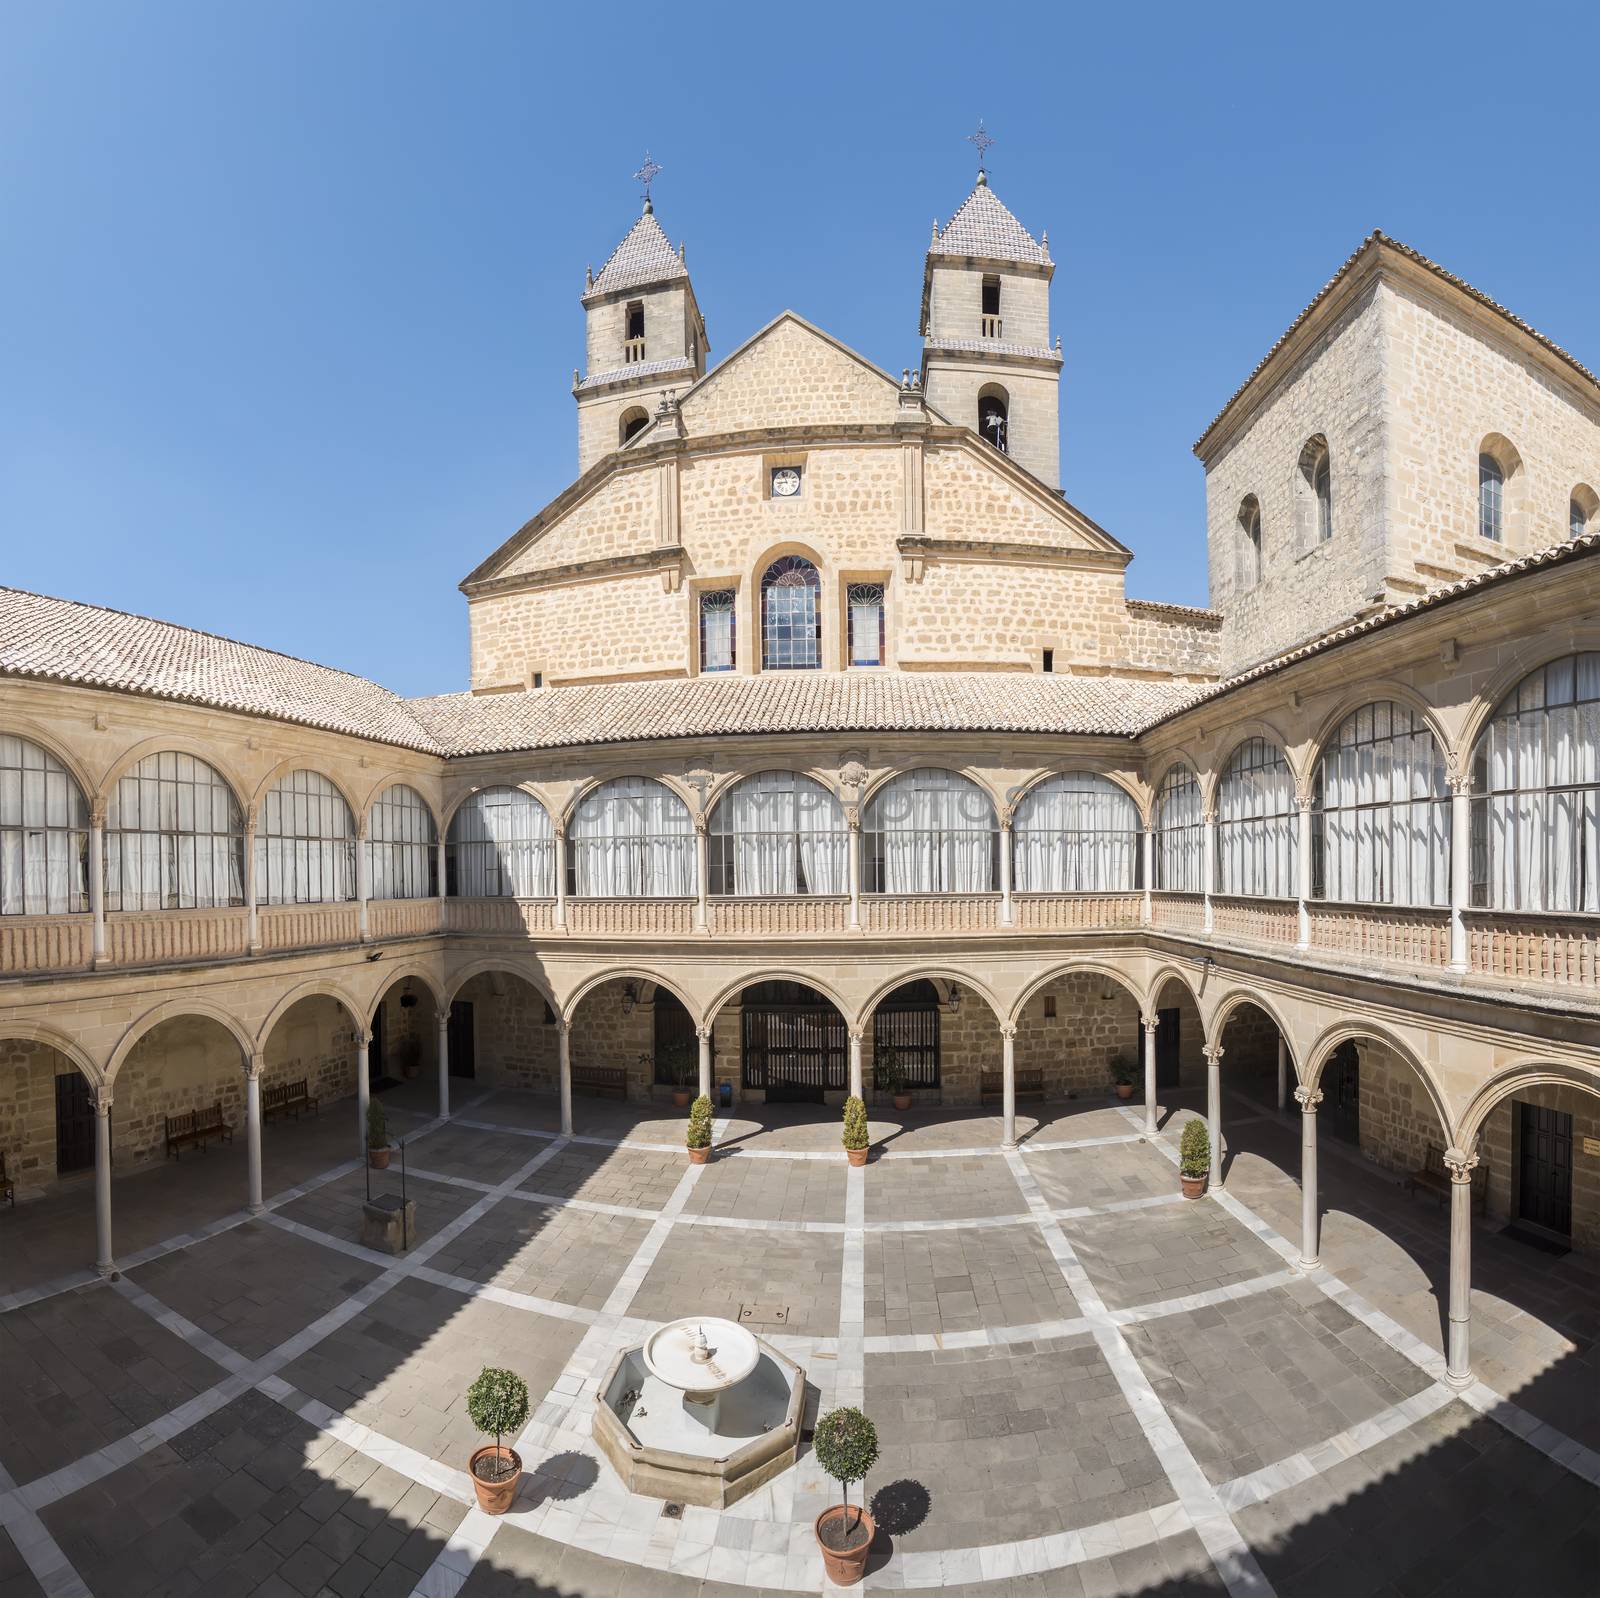 Hospital de Santiago Courtyard in Úbeda  (Cultural heritage of Humanity), Jaén, Spain. World Heritage Site of Unesco.